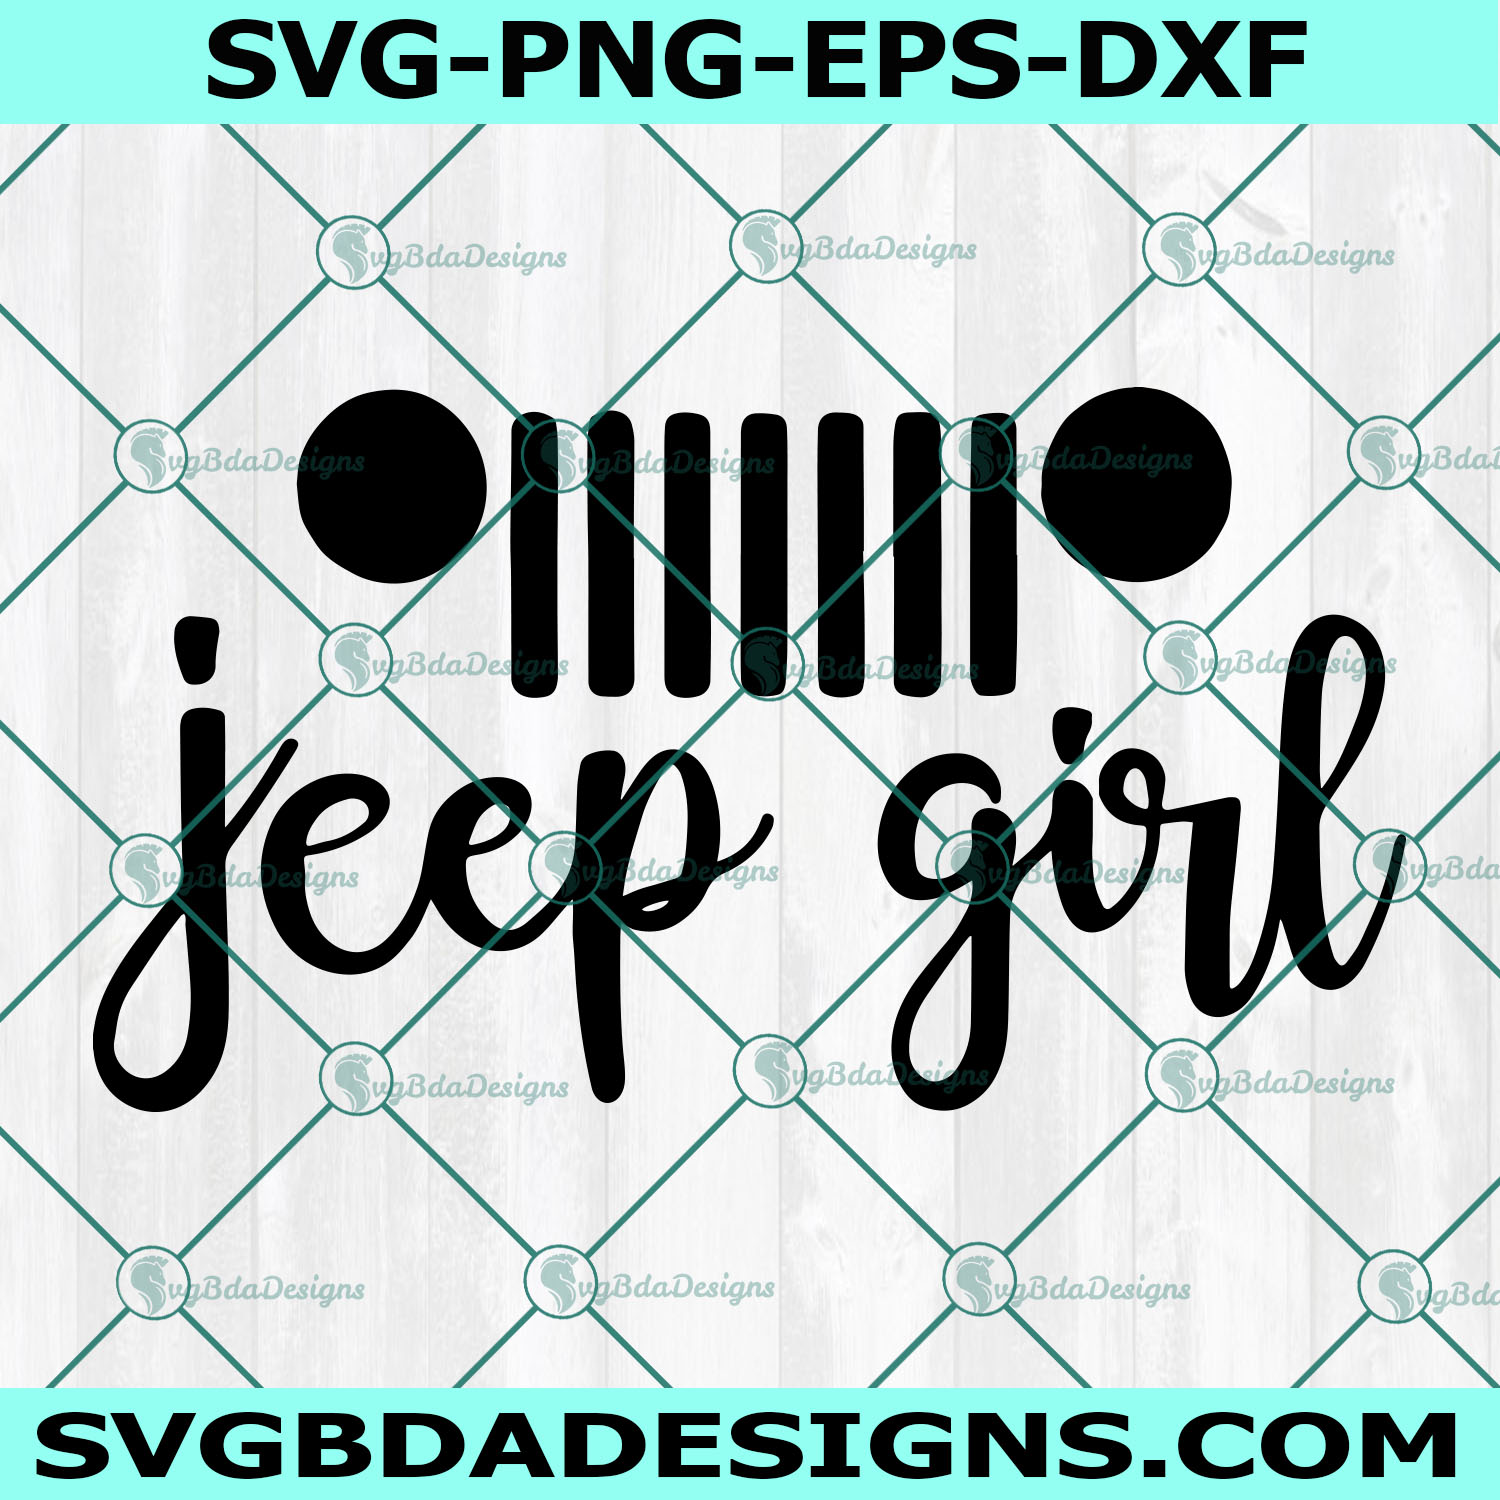 Jeep Girl Svg, Jeep Svg, Jeep Car Svg, Camper Svg, Cricut, Digital Download